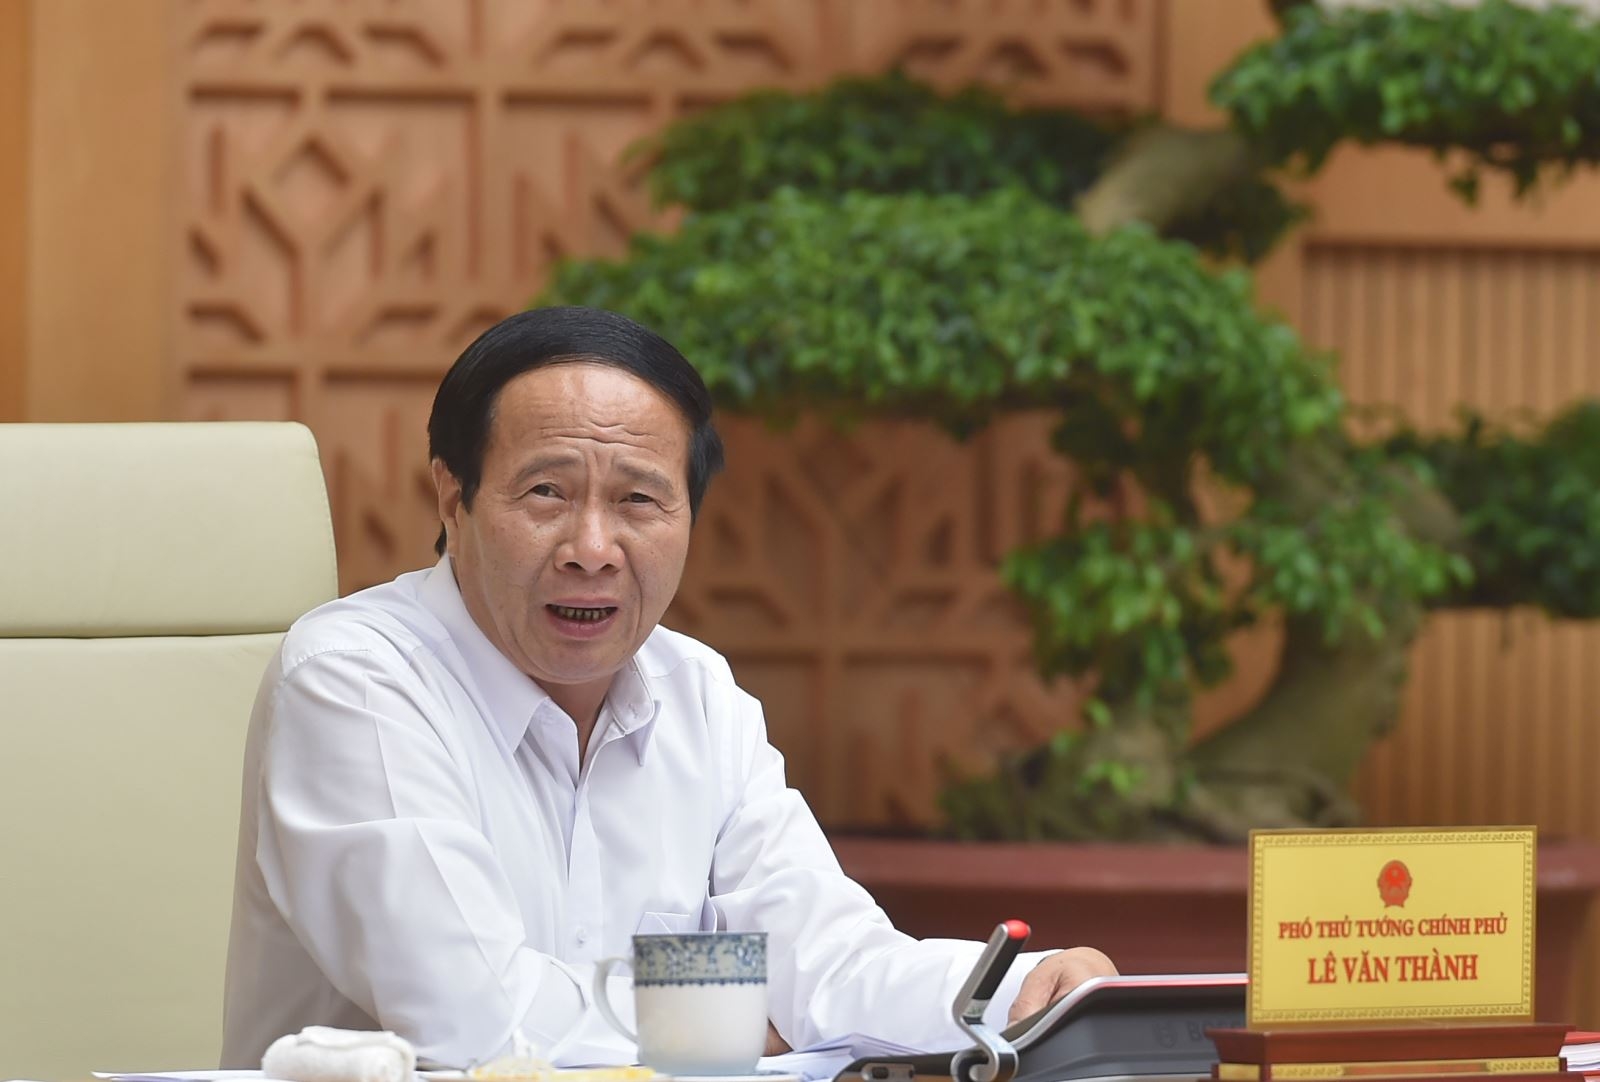 Phó Thủ tướng Lê Văn Thành: Cần tập trung hoàn thành sớm giai đoạn 1 dự án cao tốc Bắc-Nam